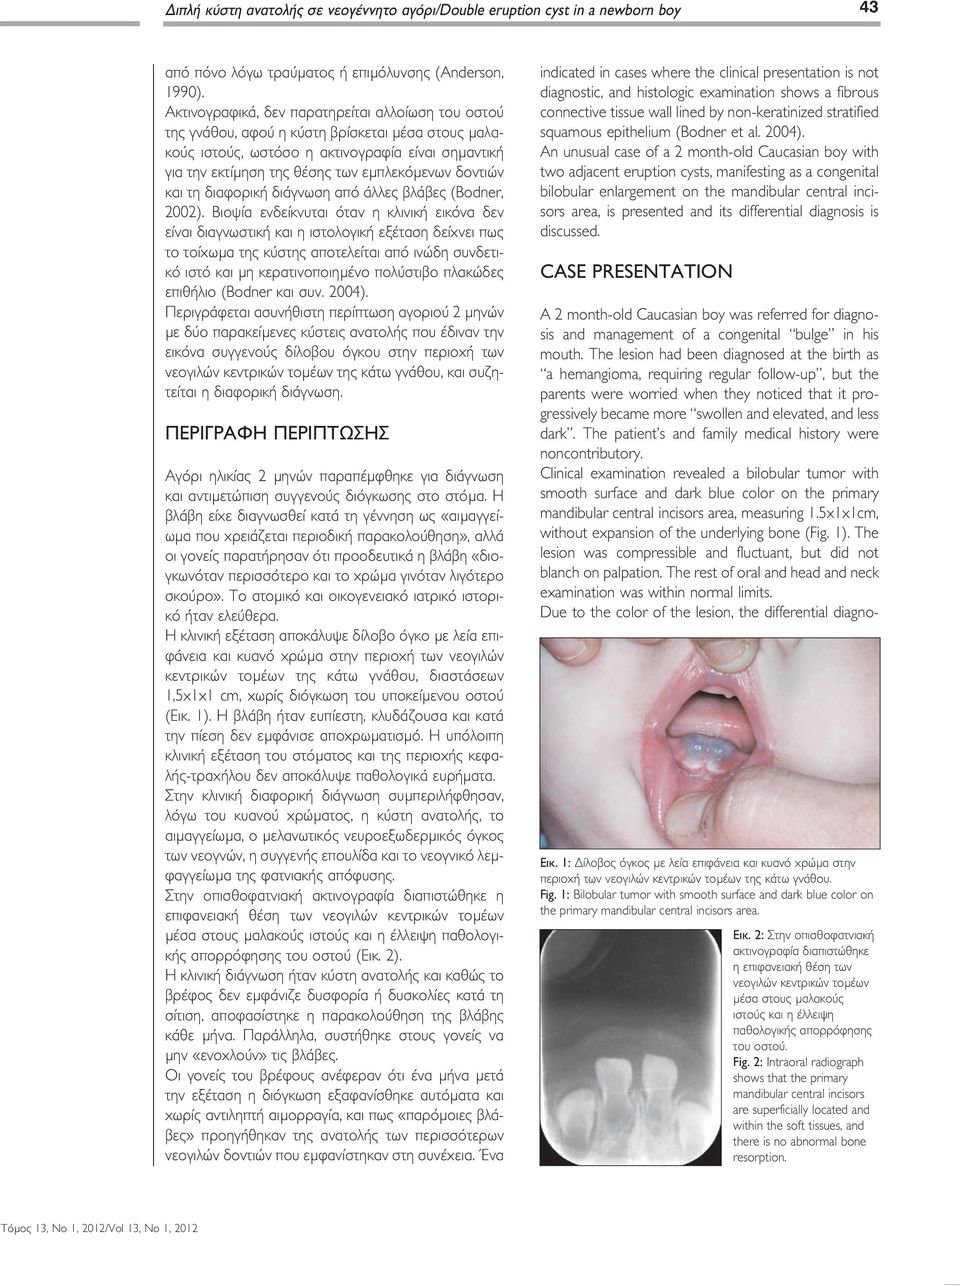 δοντιών και τη διαφορική διάγνωση από άλλες βλάβες (Bodner, 2002).